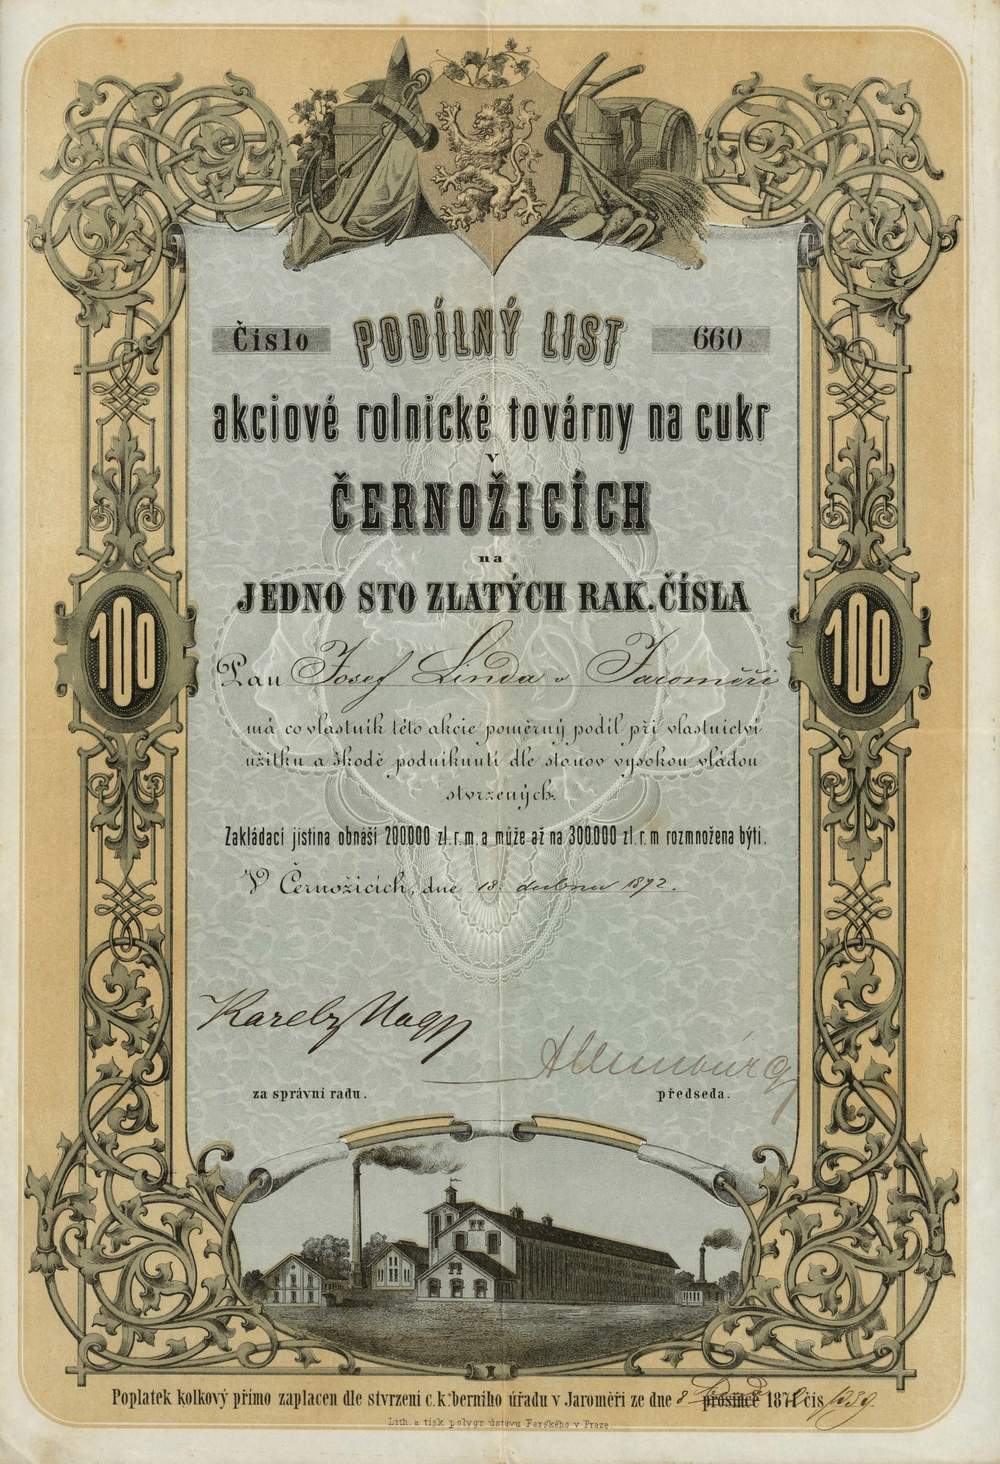 Akciový podíl Akciová rolnická továrna na cukr v Černožicích, 1872, 100 Zlatých